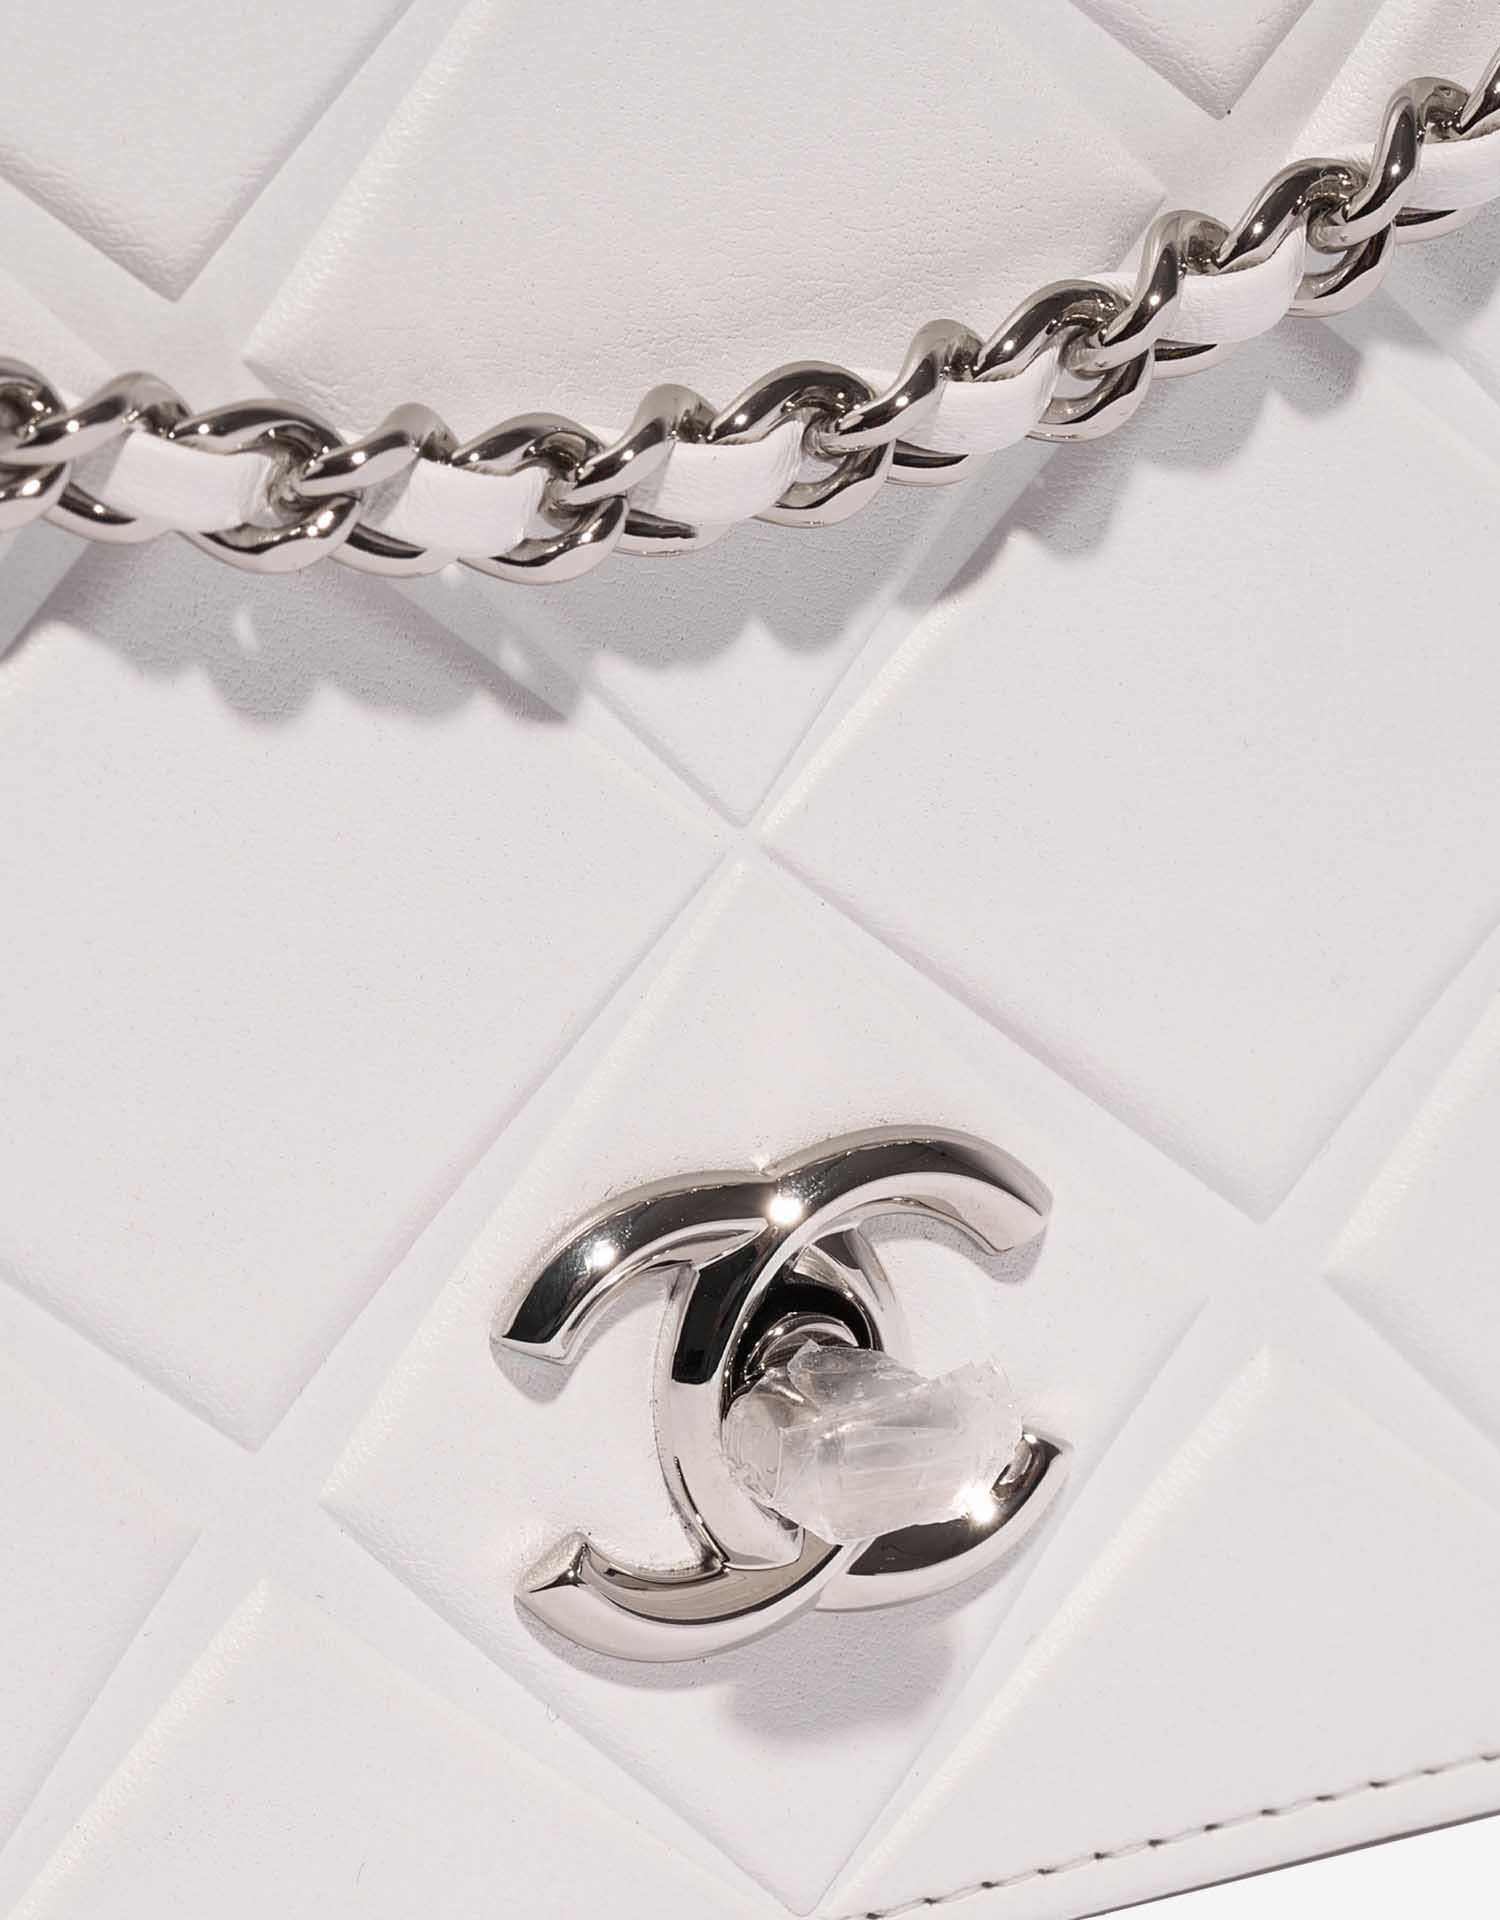 Chanel Timeless MiniFlap White Verschluss-System | Verkaufen Sie Ihre Designer-Tasche auf Saclab.com